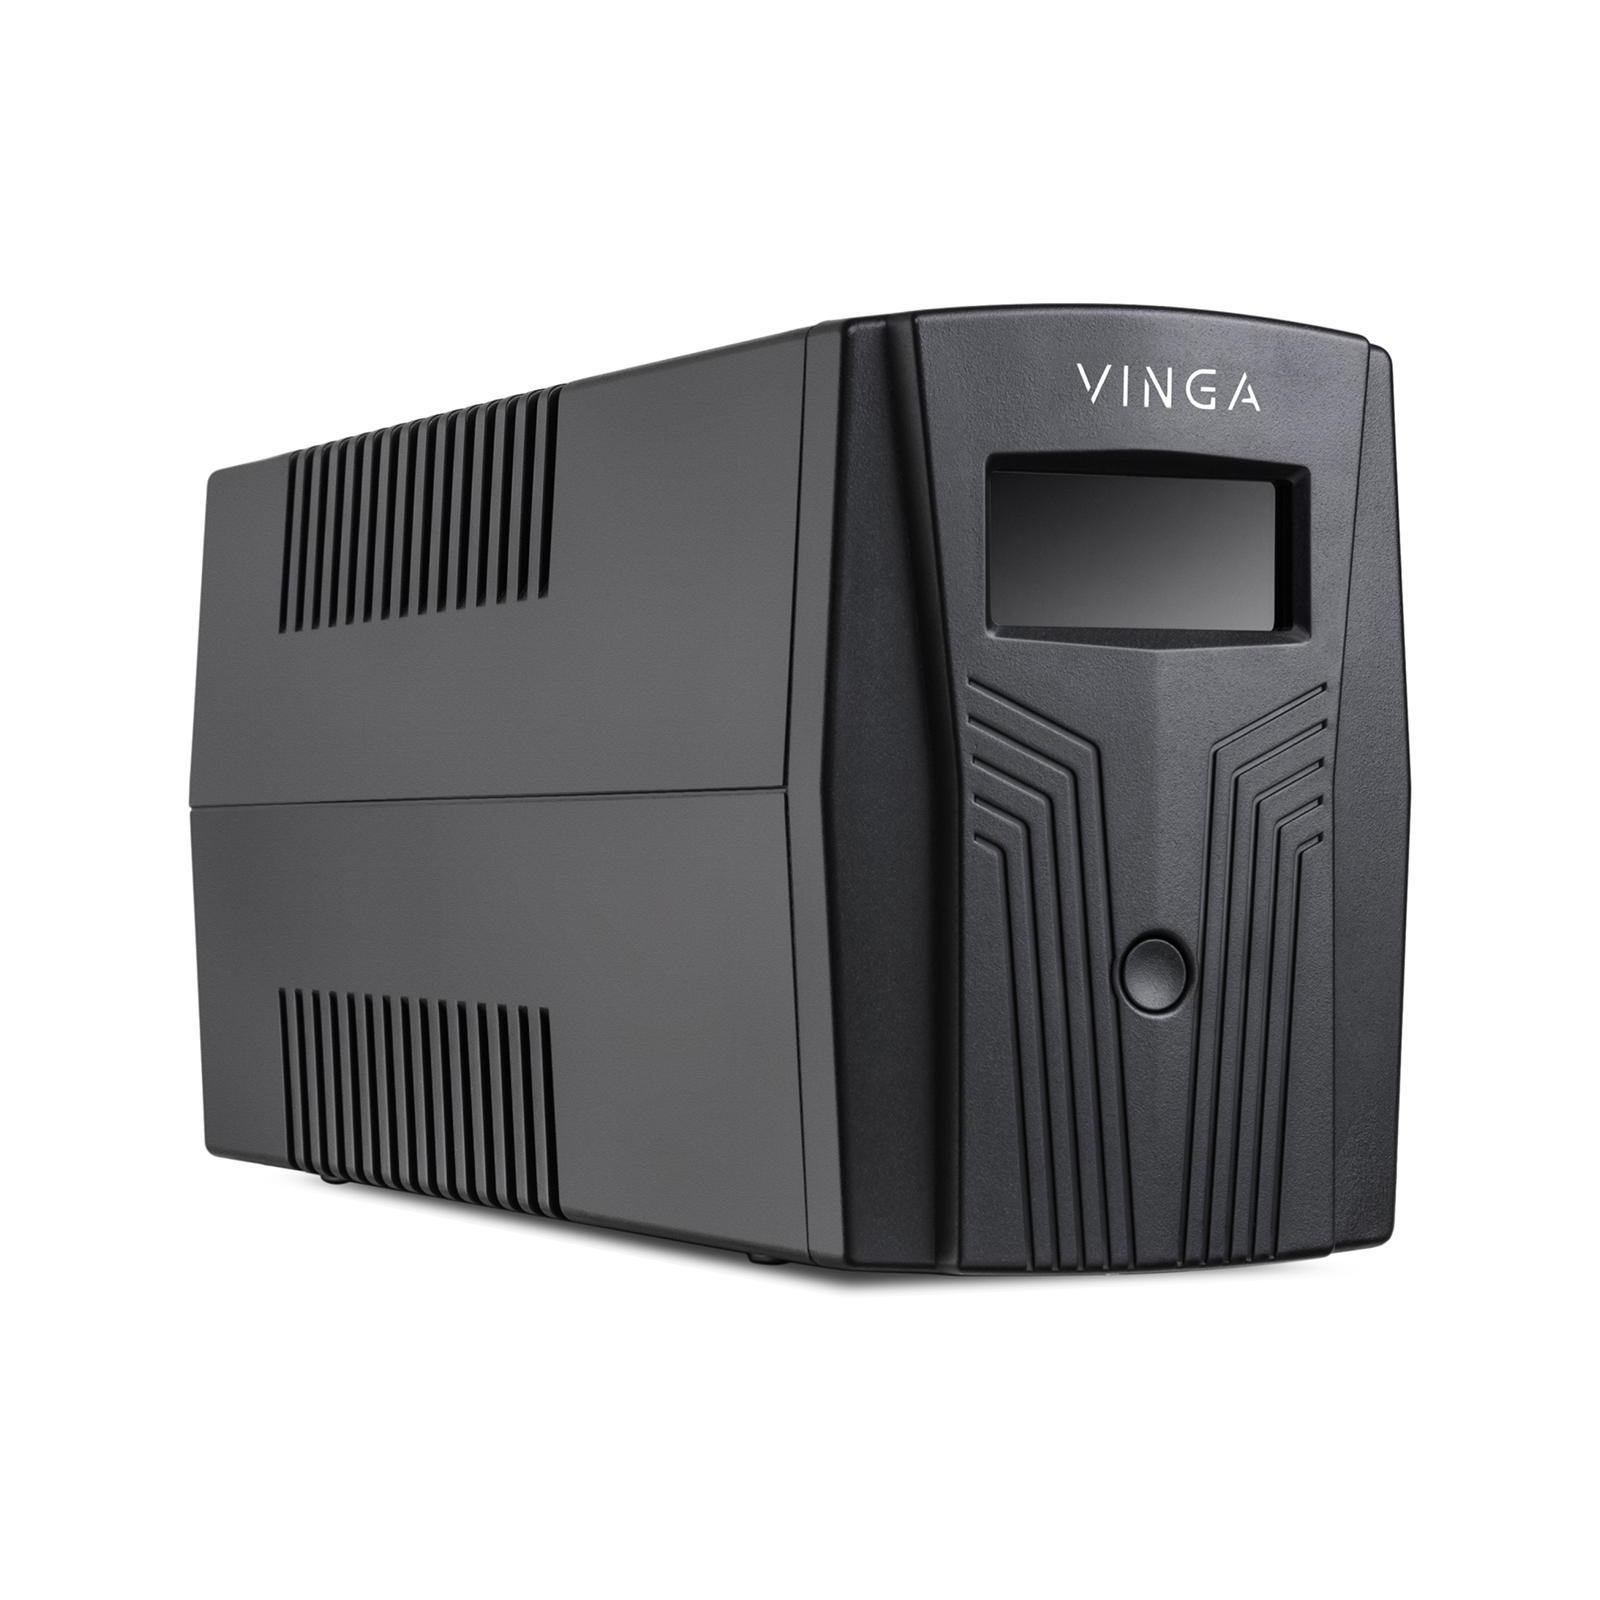 Источник бесперебойного питания Vinga LCD 1200VA plastic case with USB (VPC-1200PU) изображение 6